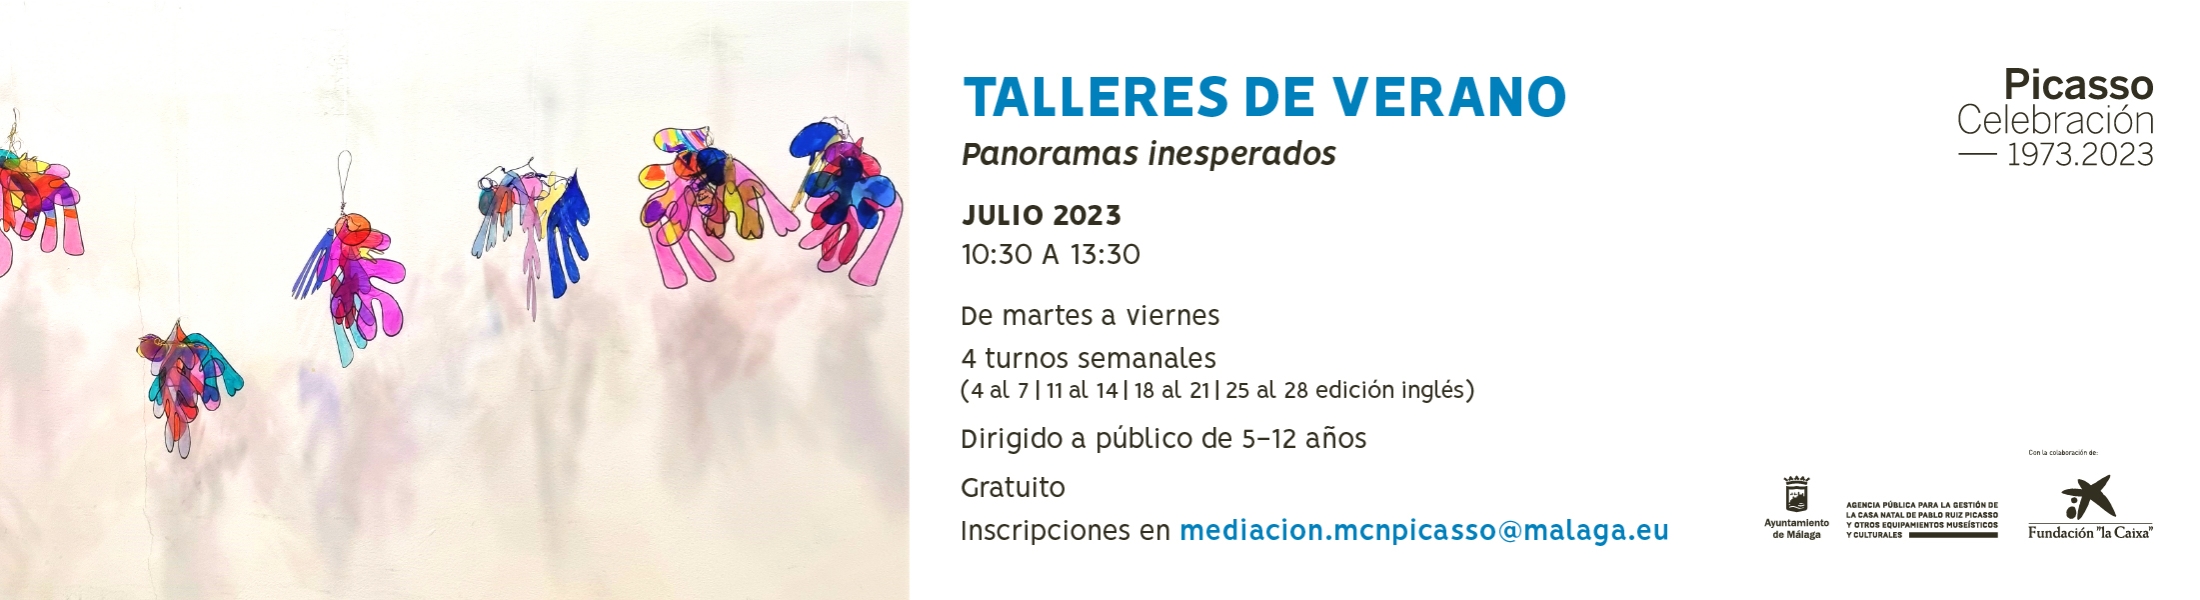 2023 Talleres verano_BANNER